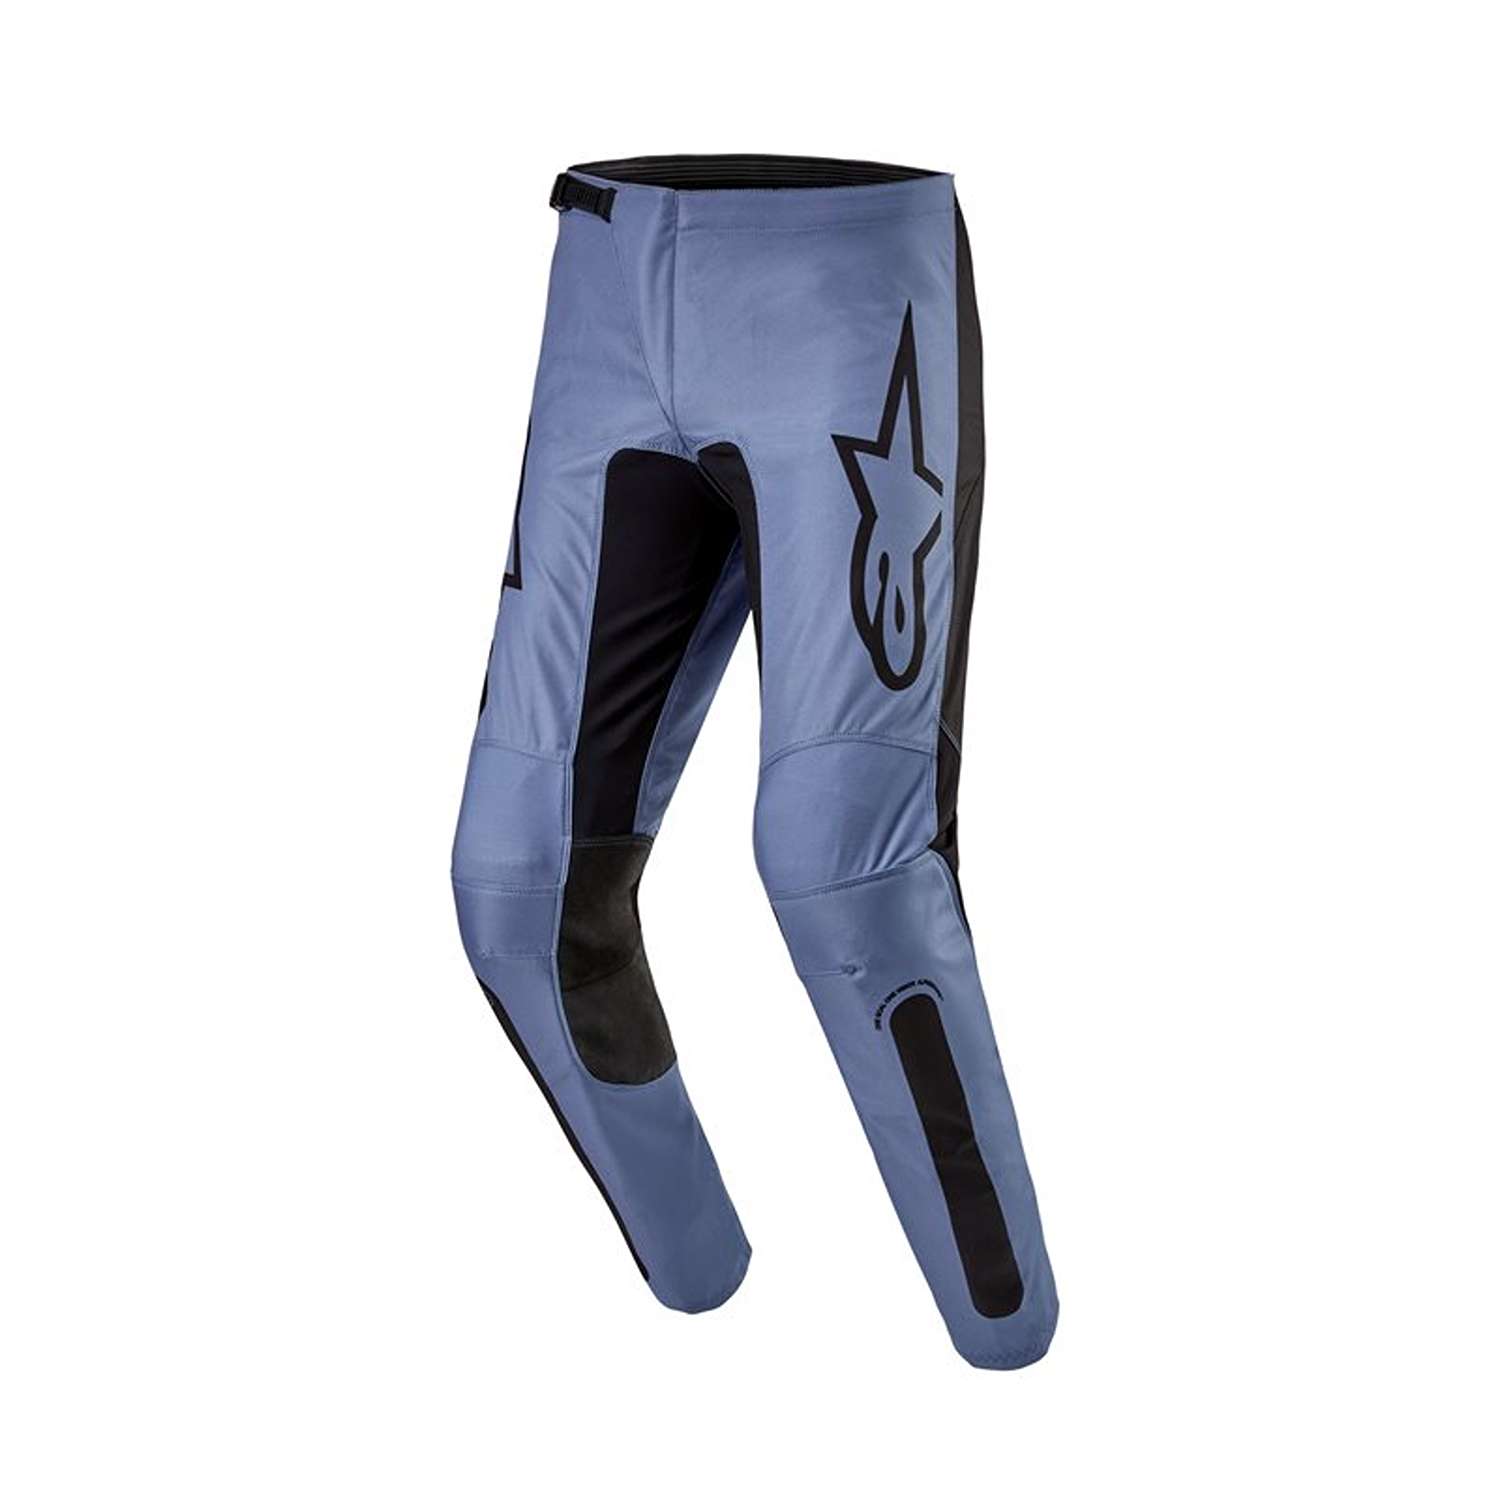 Image of Alpinestars Fluid Lurv Pants Light Blue Black Size 36 ID 8059347265247